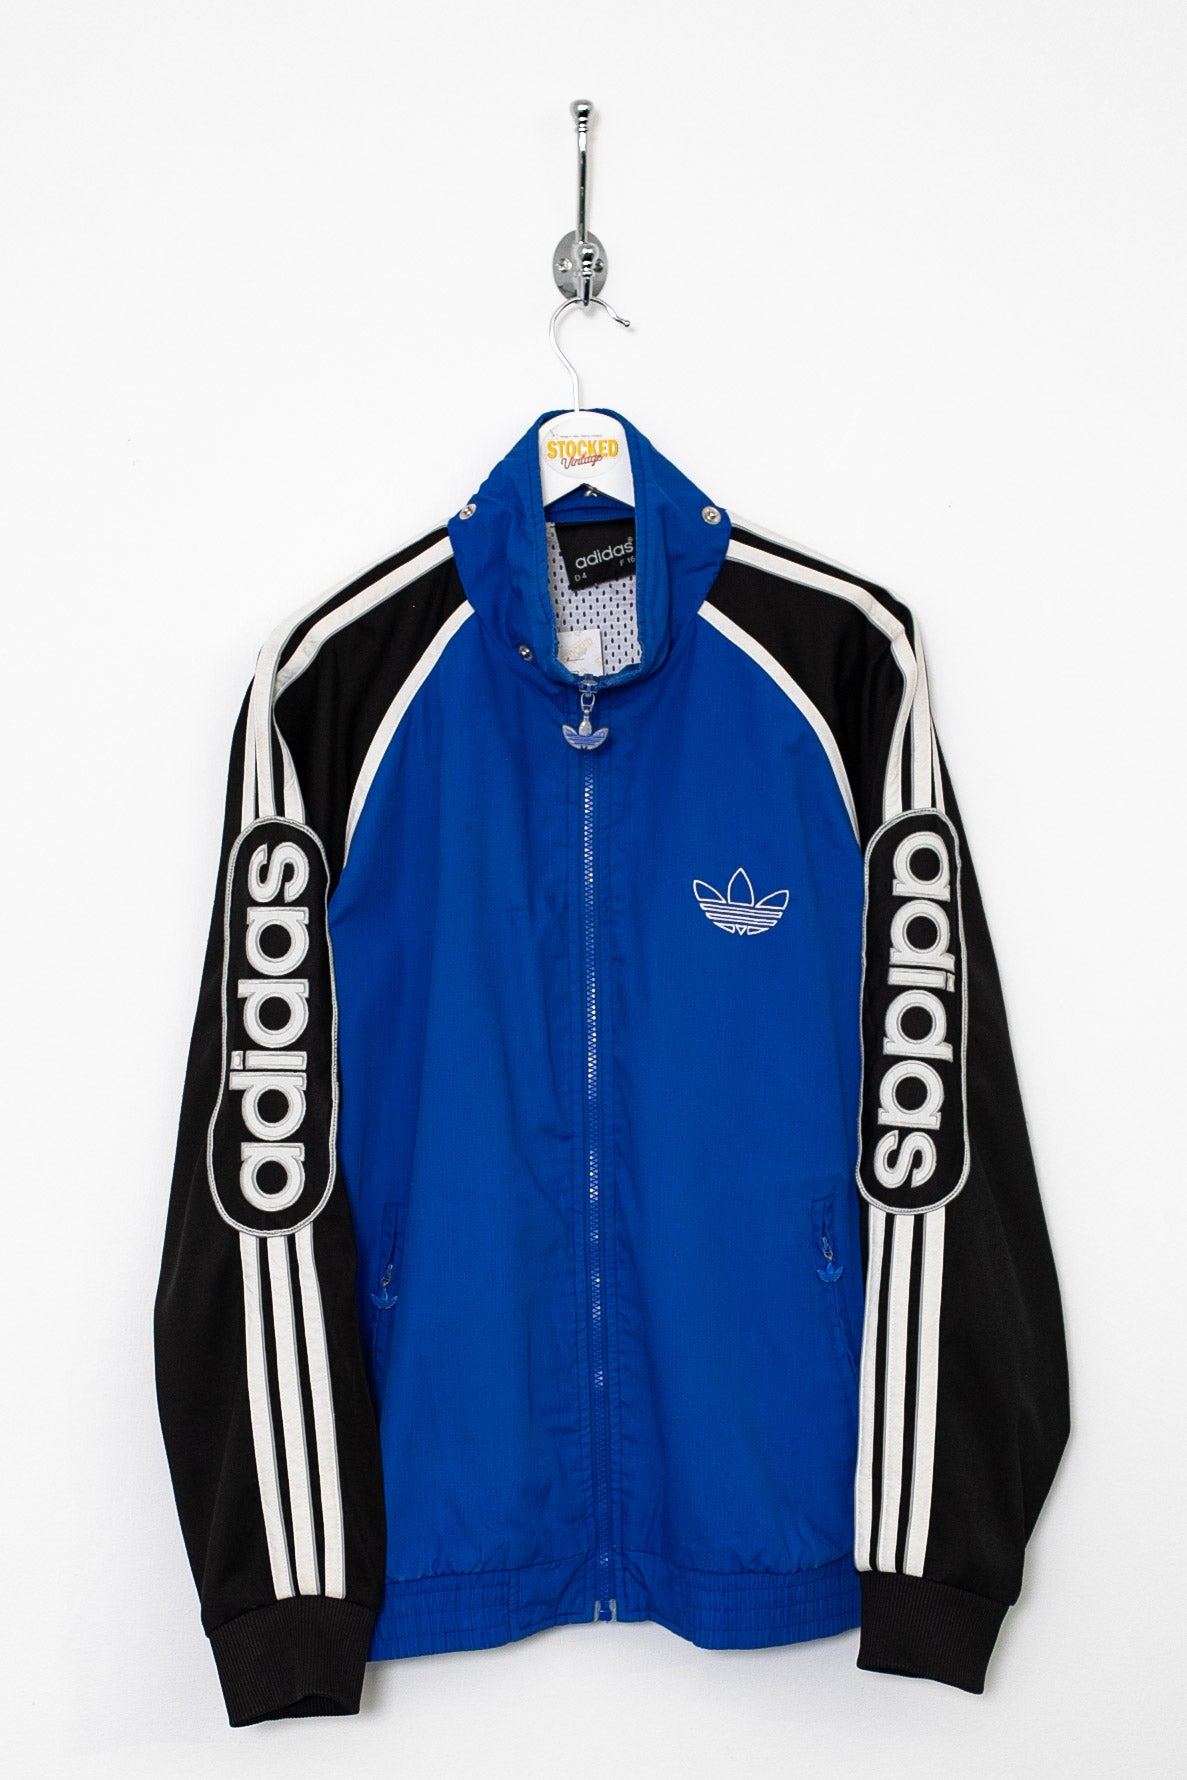 90s Adidas Jacket (M)